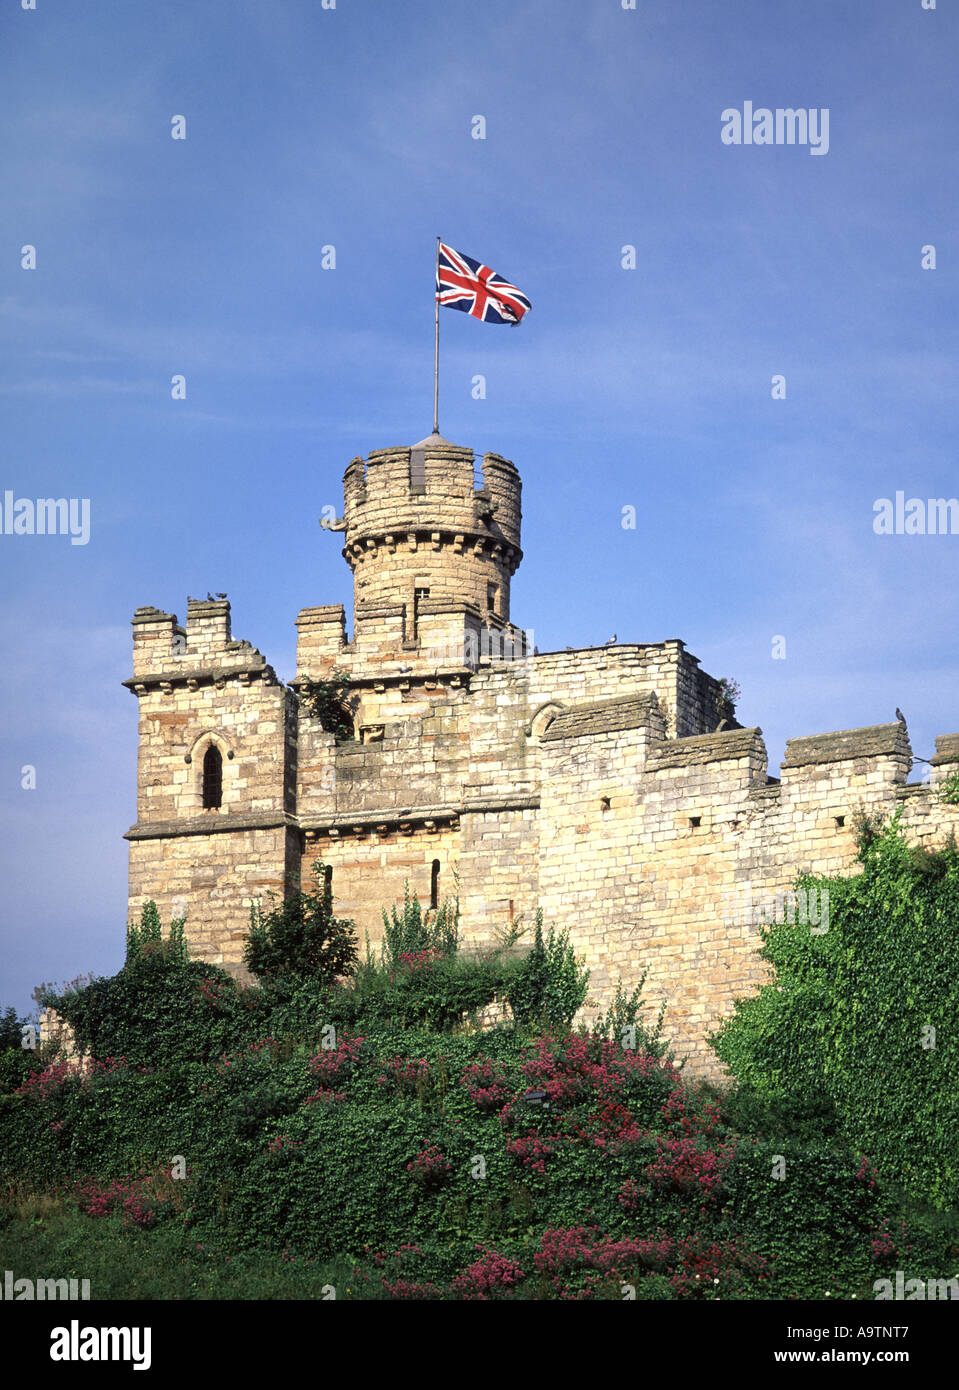 Tour du château de Lincoln avec drapeau de l'Union européenne Banque D'Images